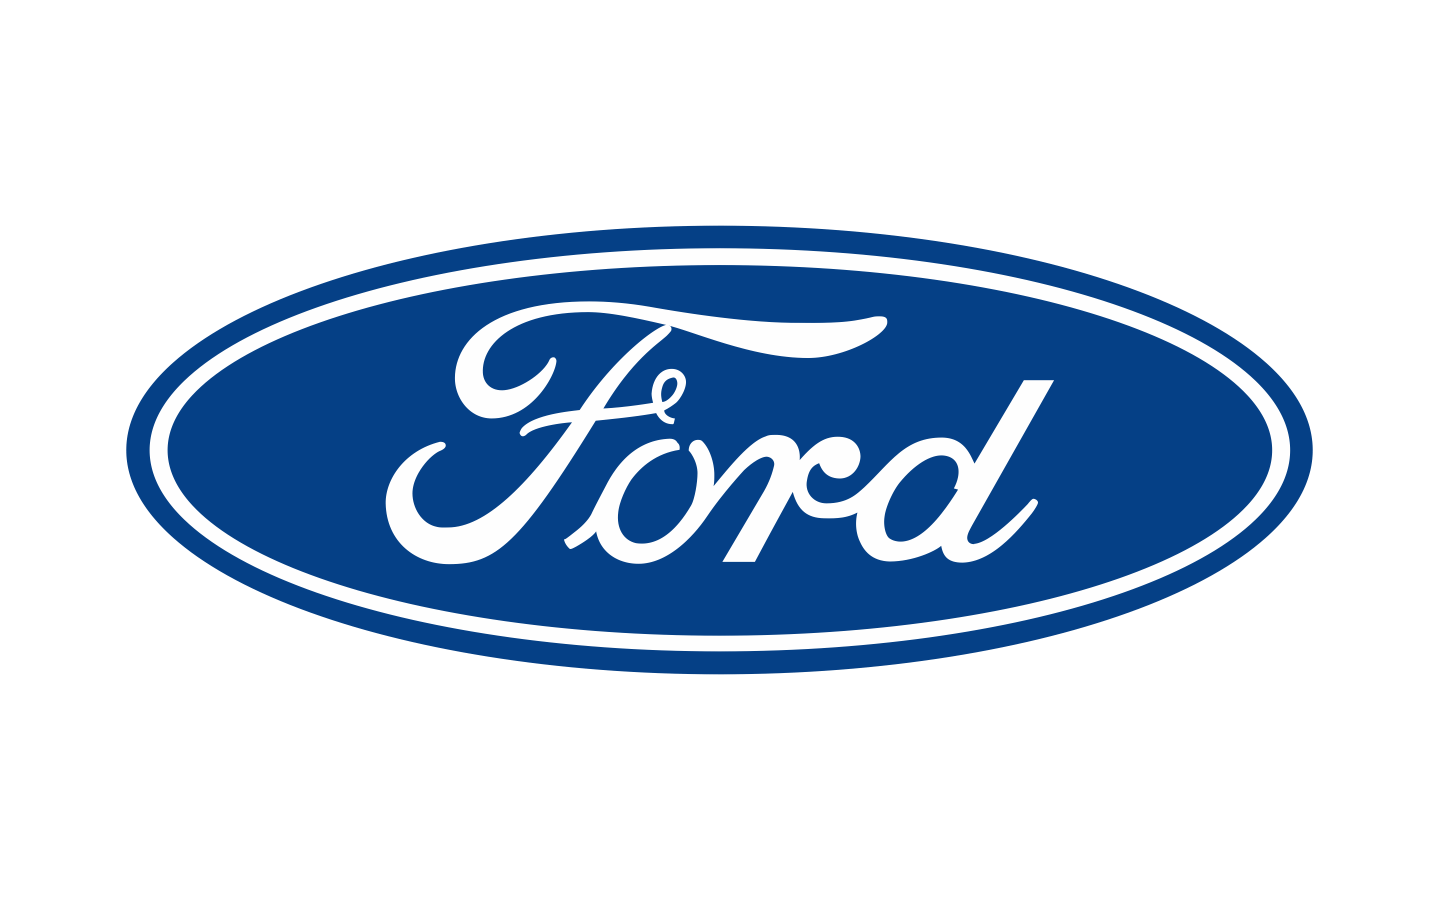 2017 Ford Logo - Ford Logo 1929 1440x900